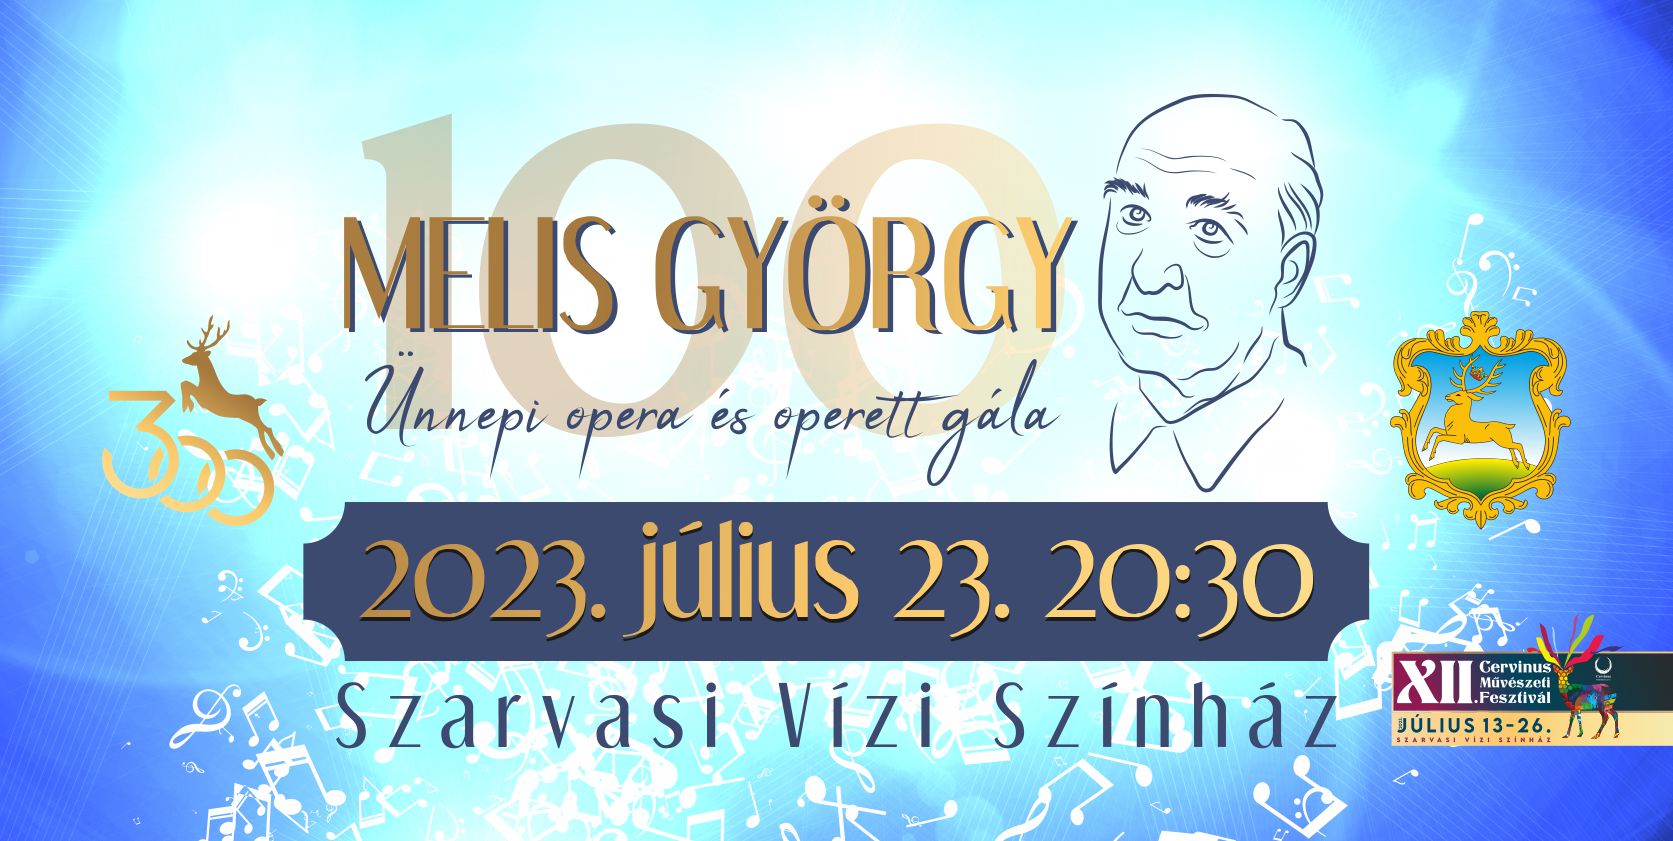 Melis György 100 - ünnepi opera és operett gála